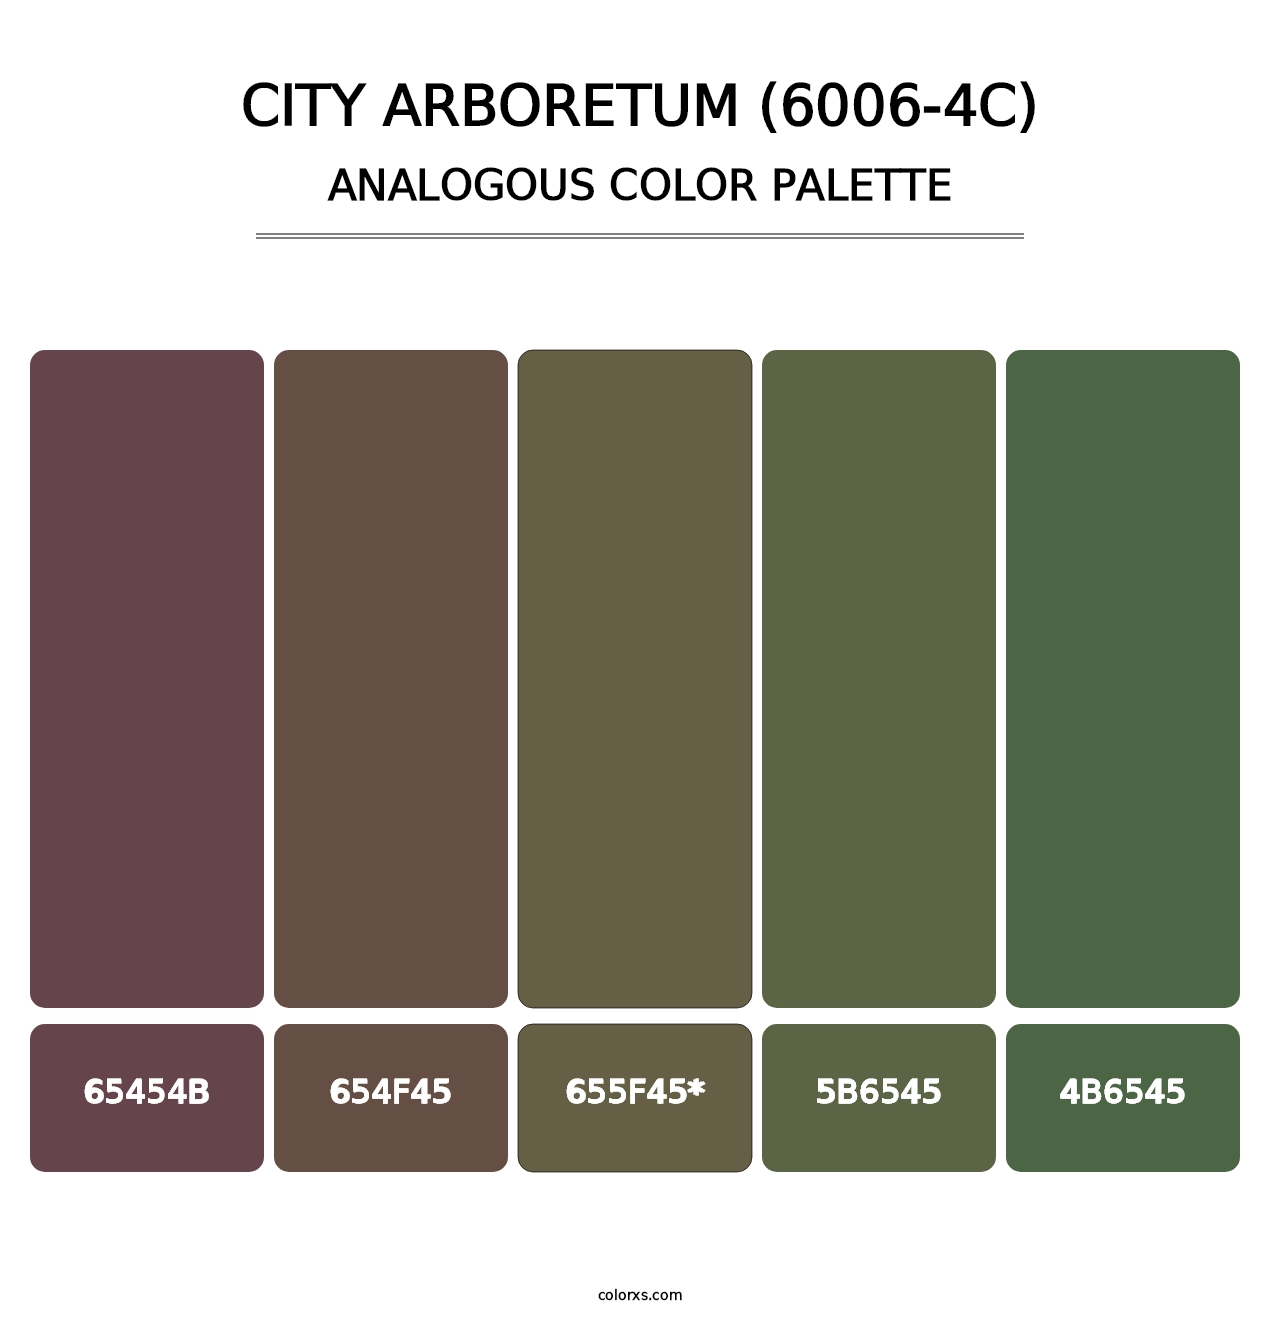 City Arboretum (6006-4C) - Analogous Color Palette